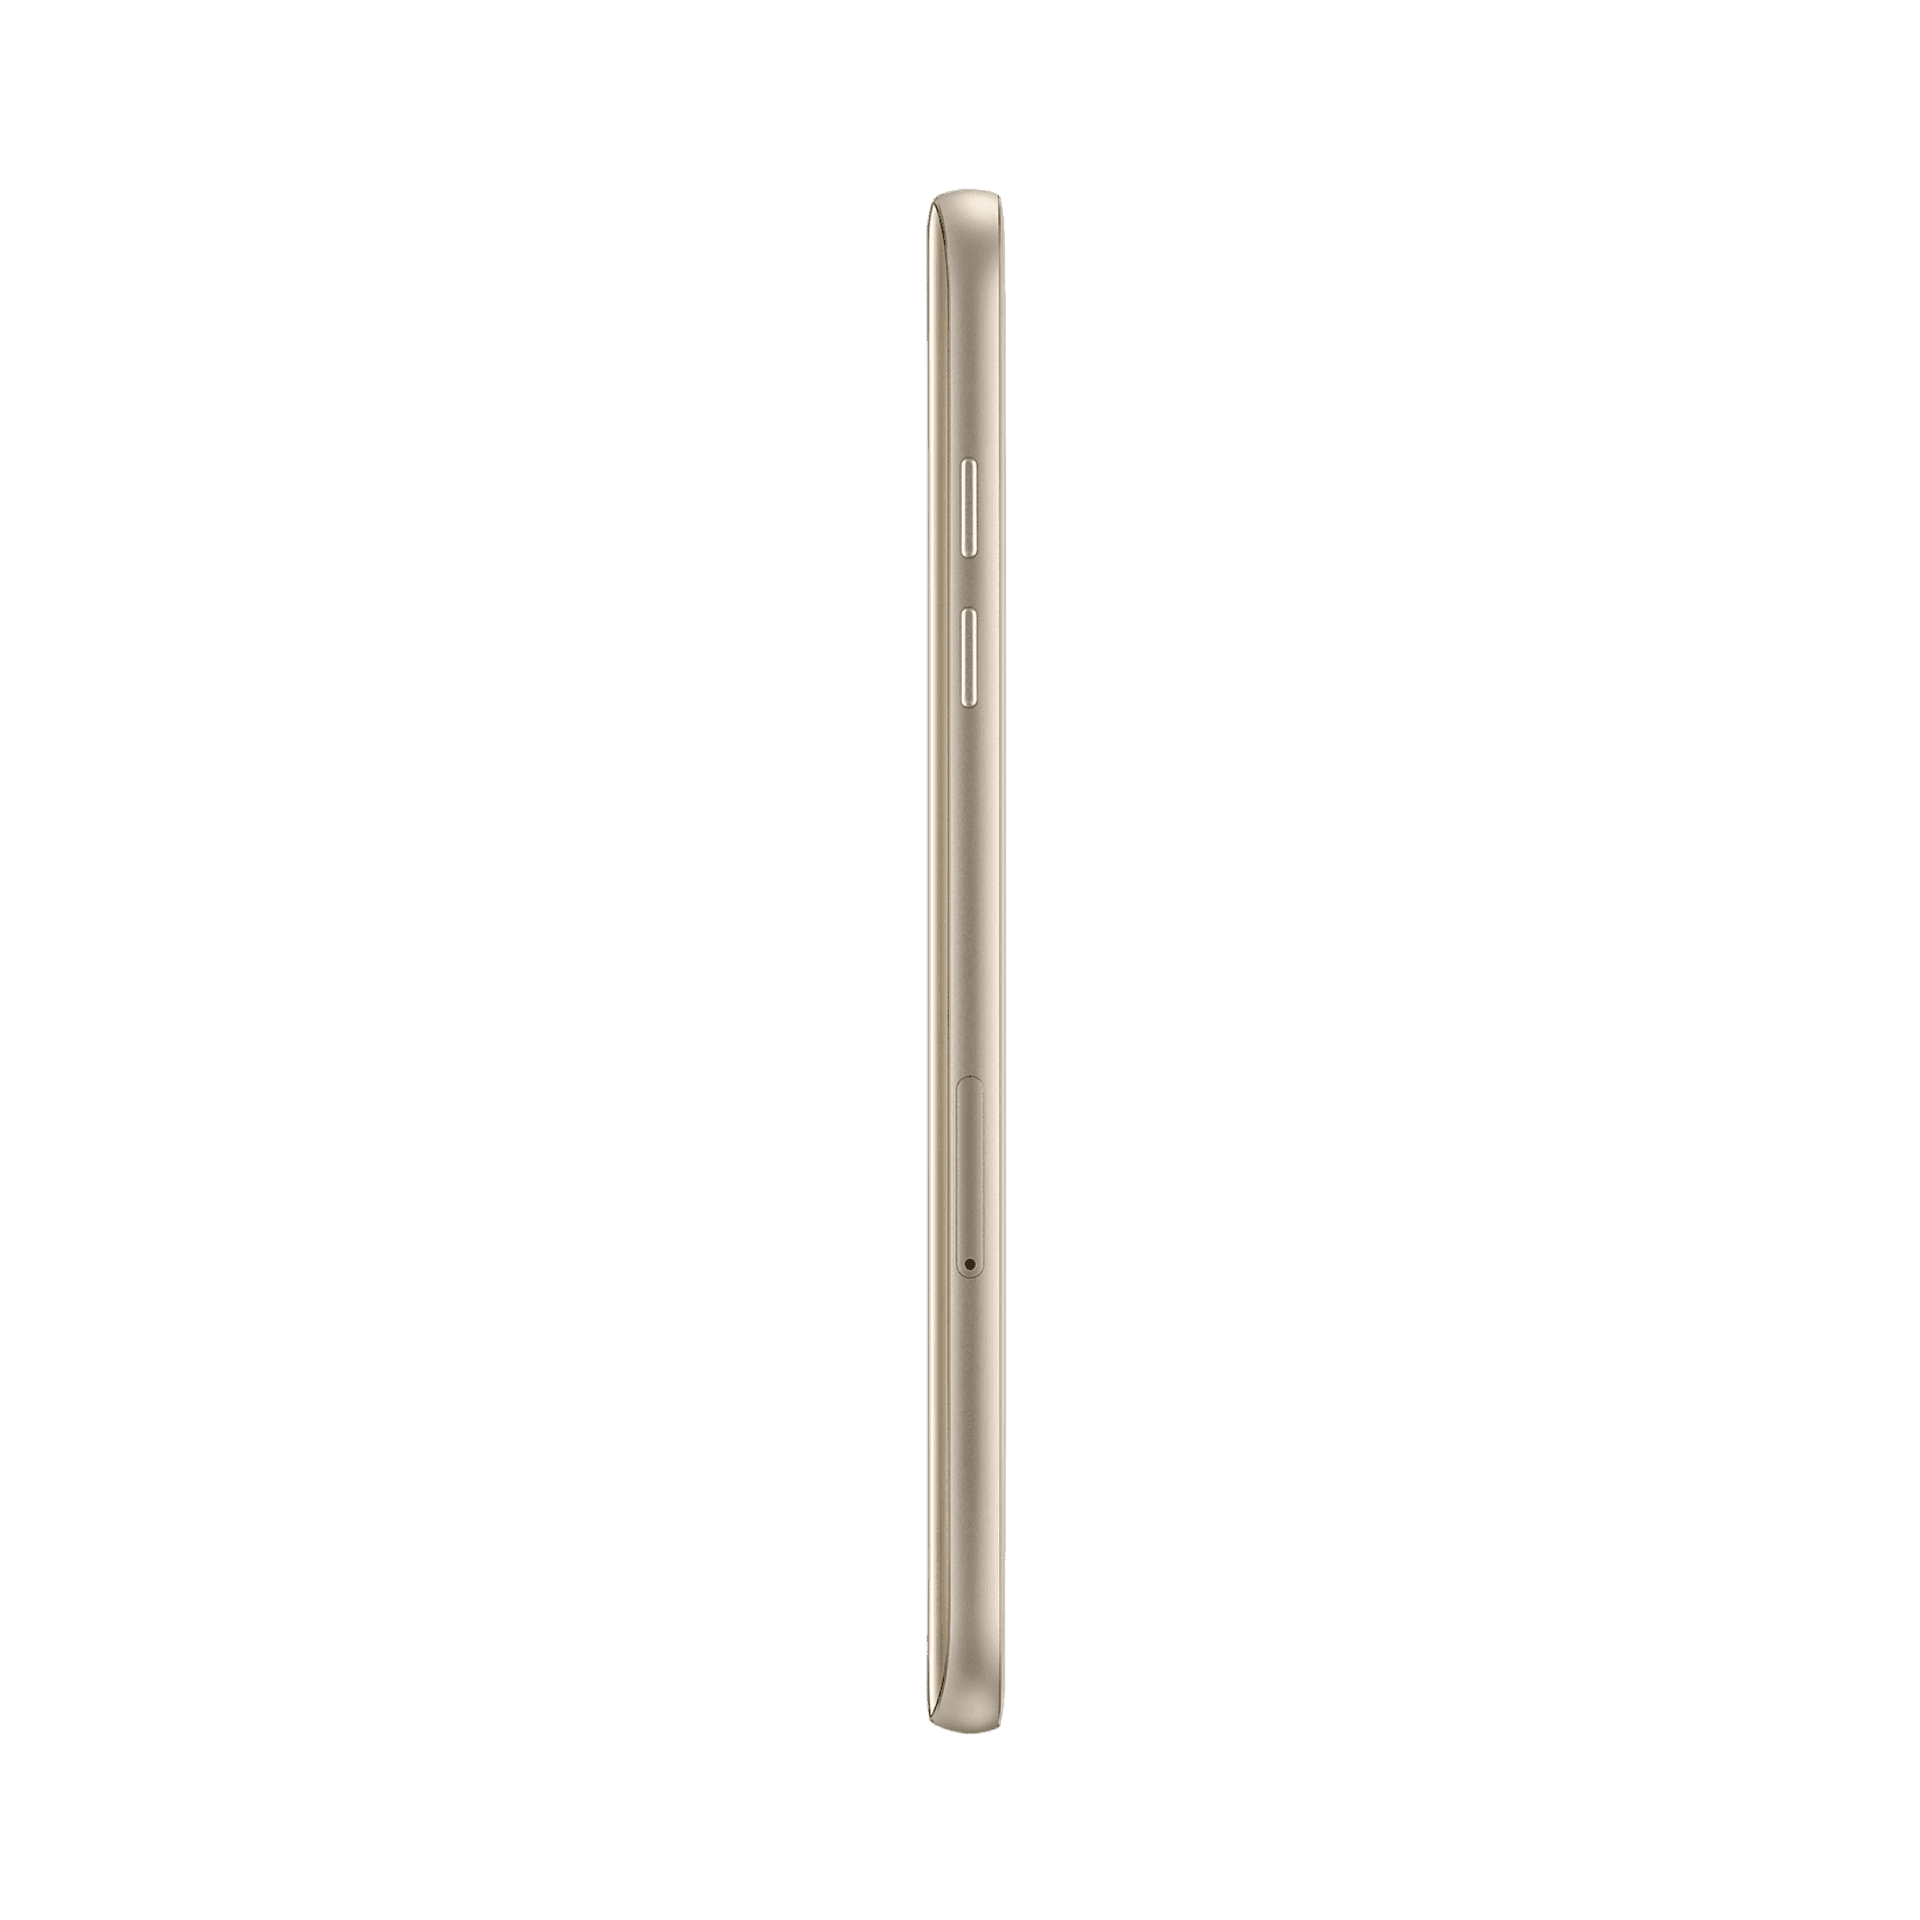 Samsung Galaxy A7 (2017) - 32 GB - Altın Kum